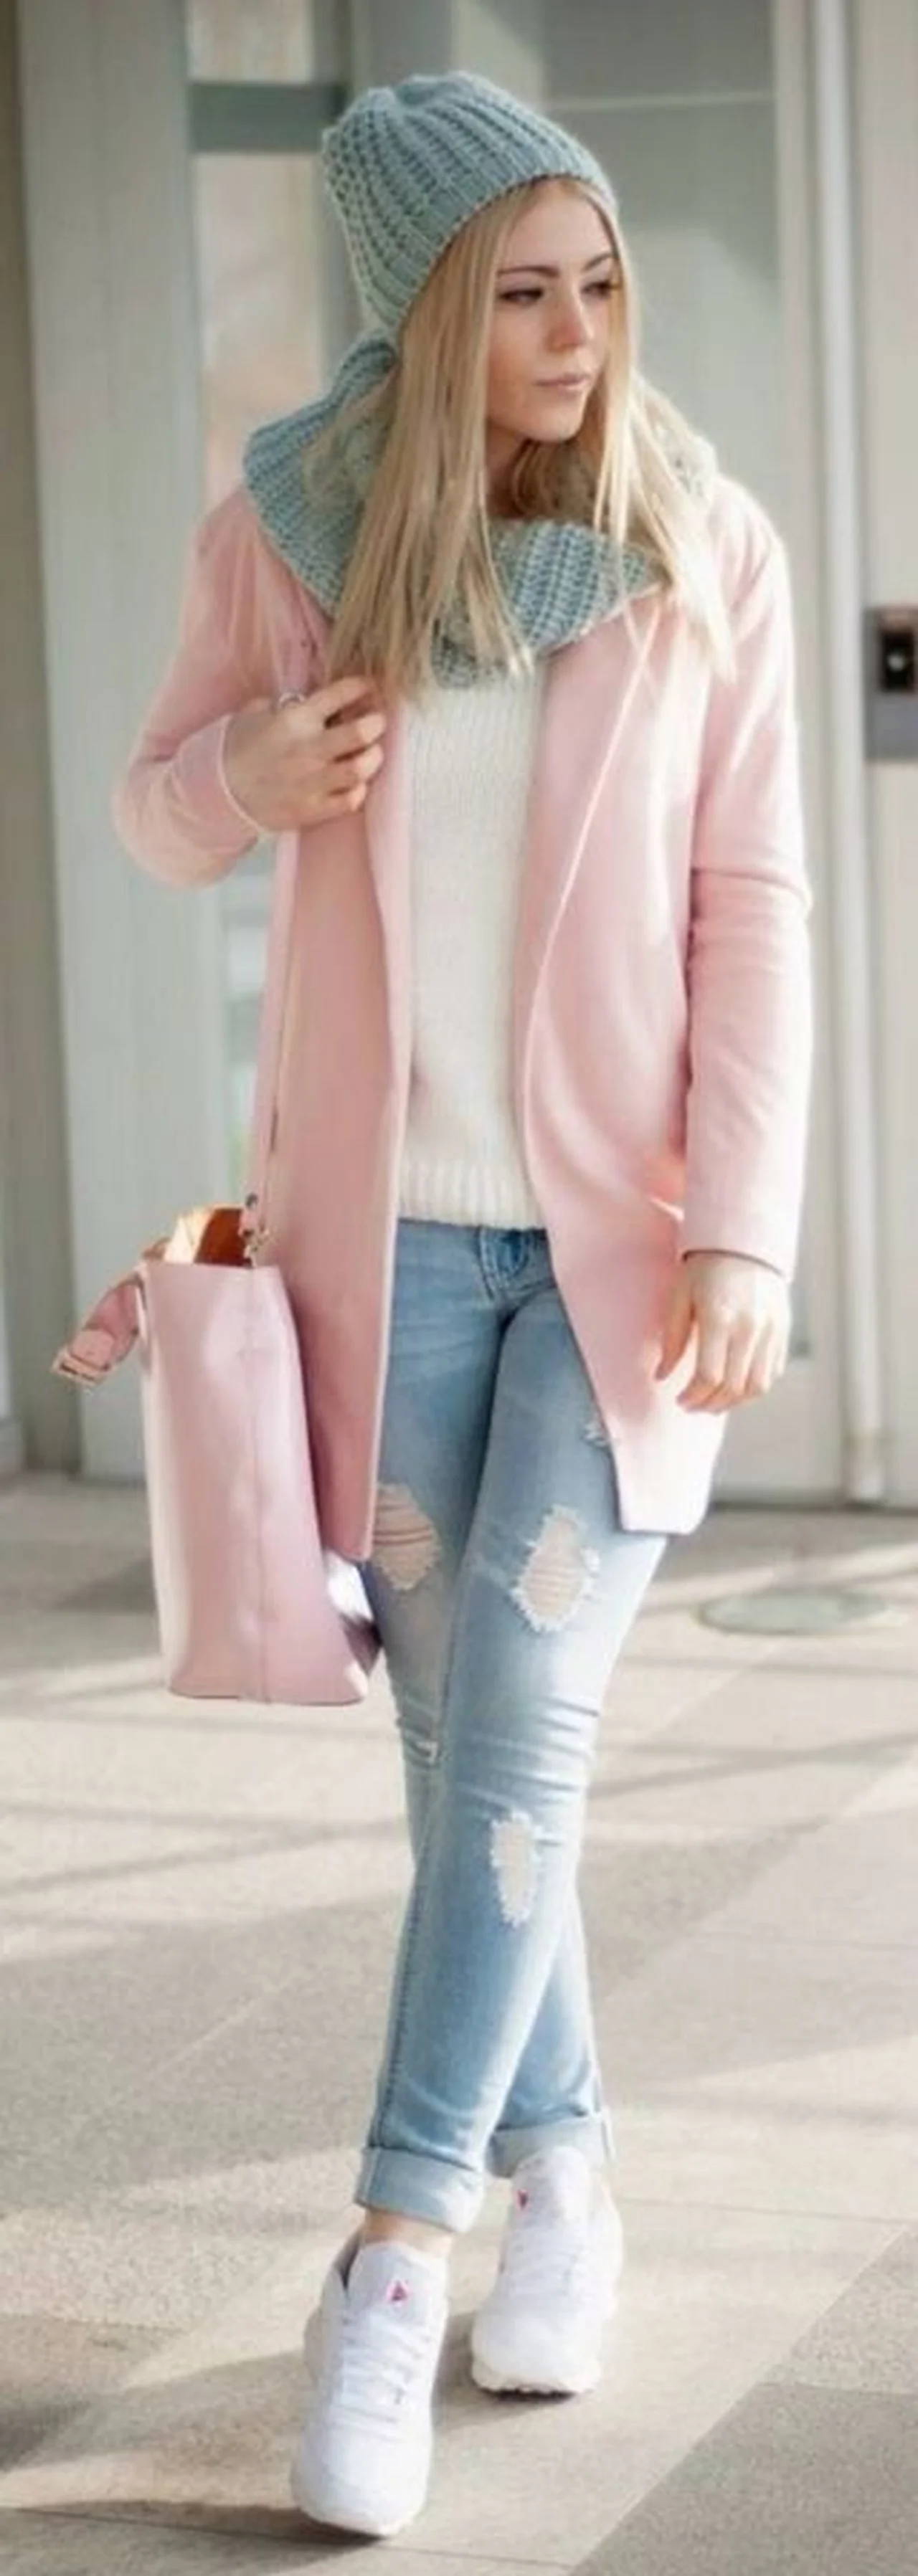 Różowy płaszczyk - stylizacje